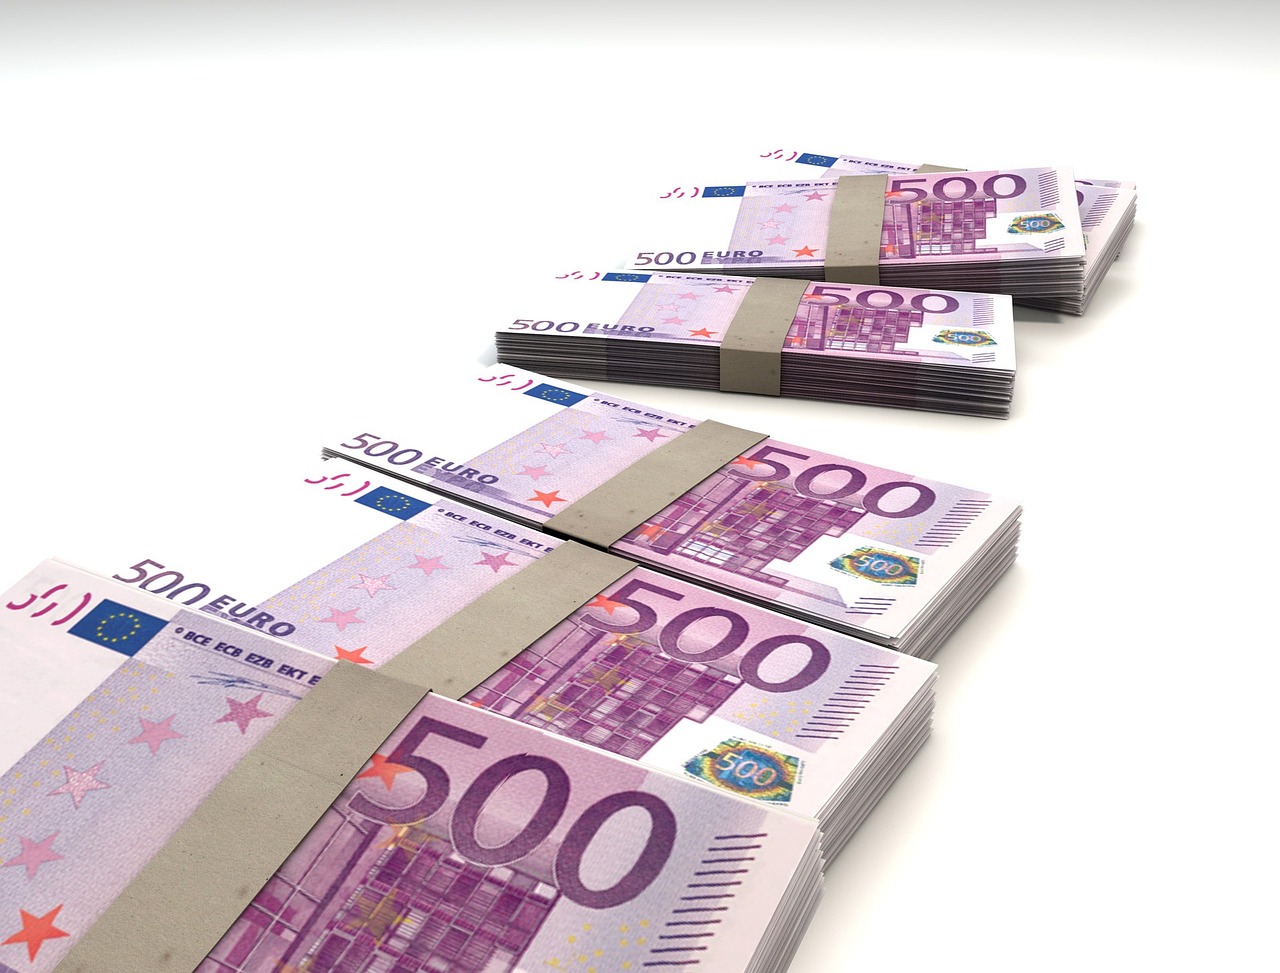 Tetto al contante fino a 10 mila euro, ma arrivano tante novità